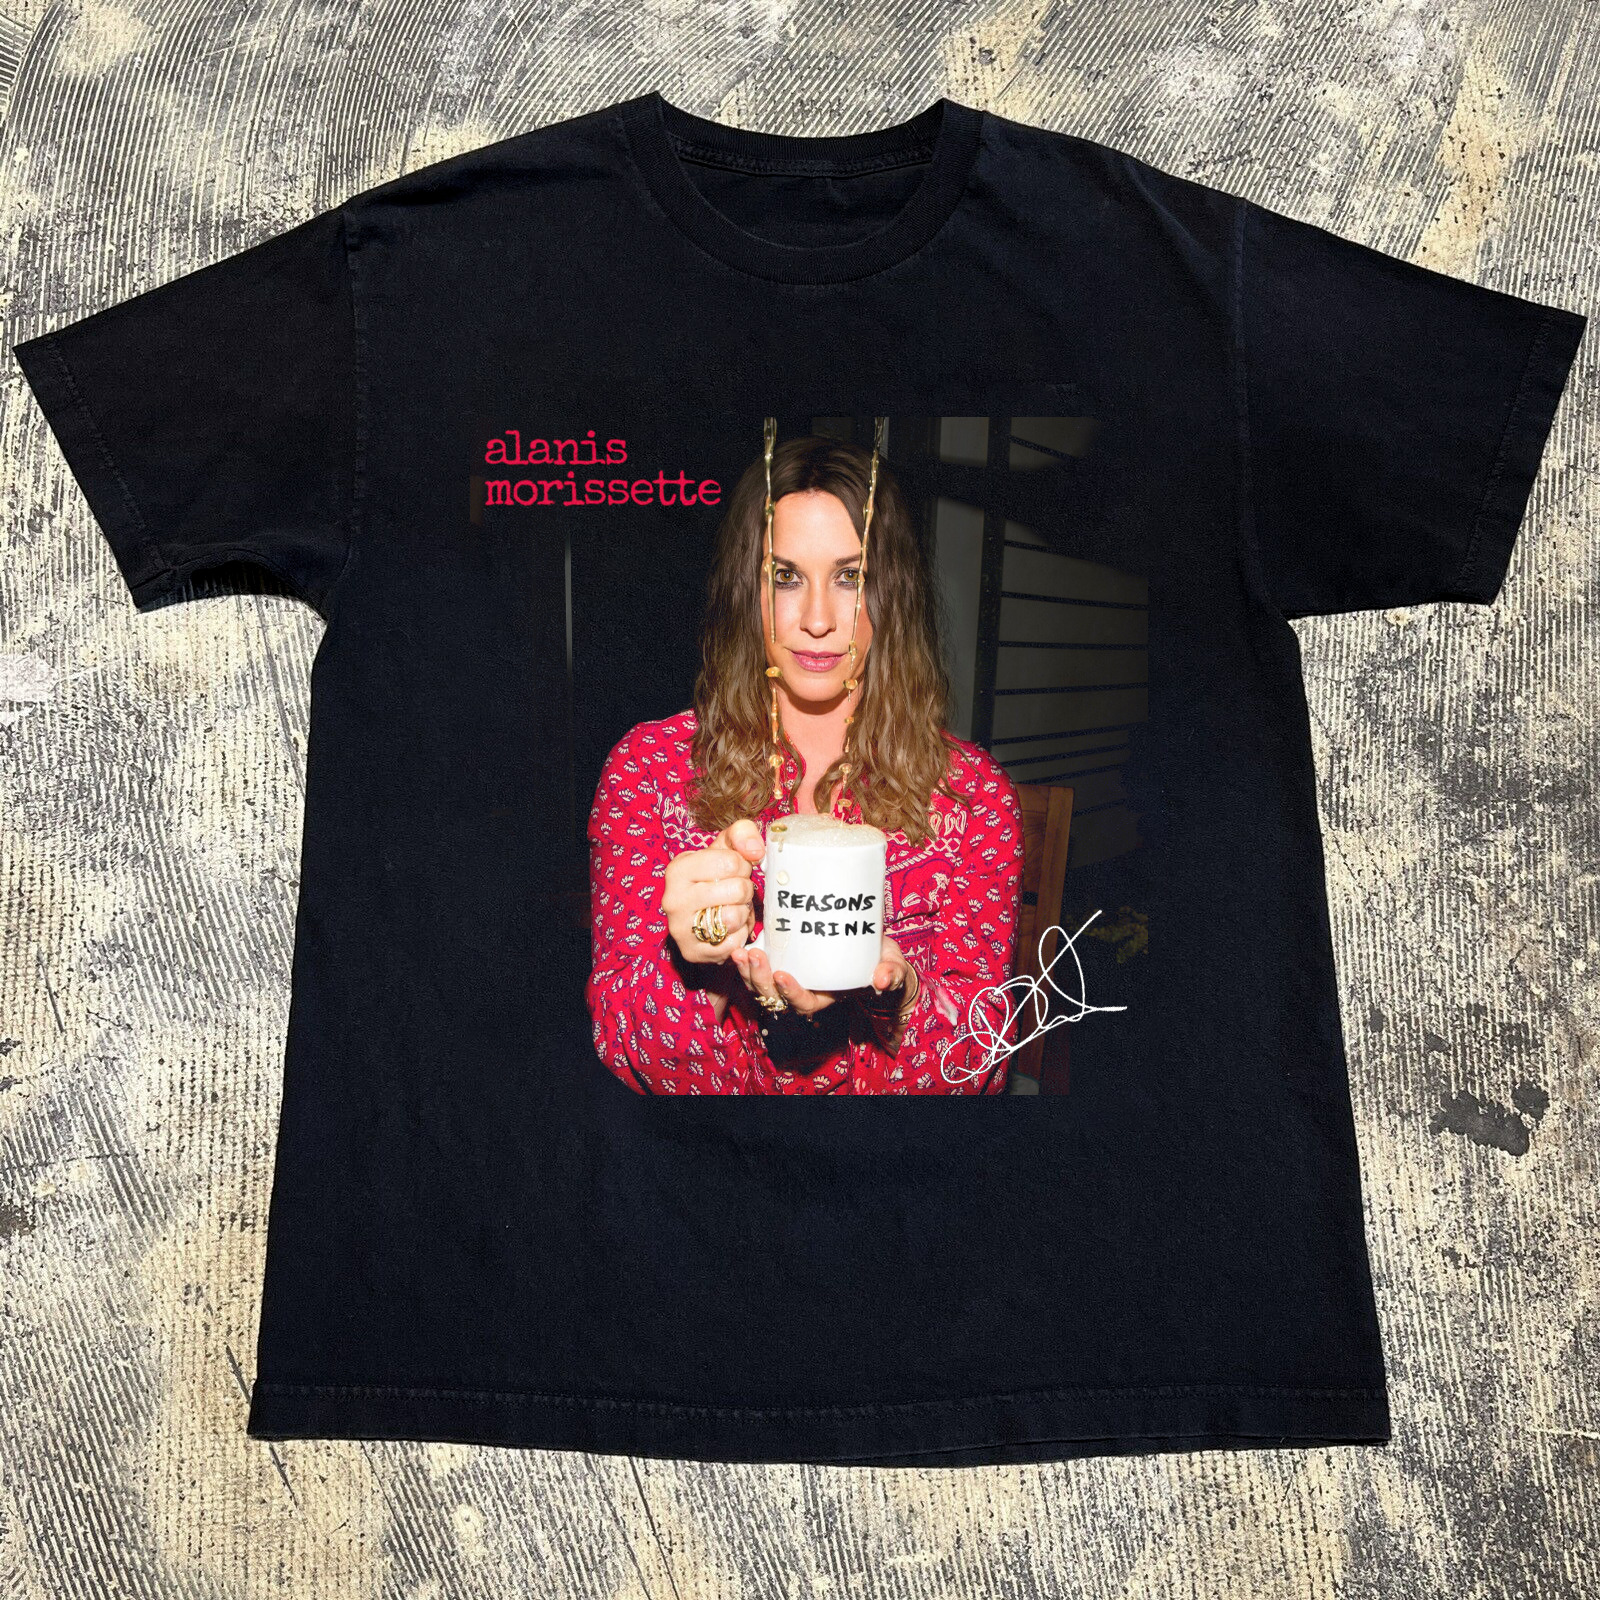 NEW Rare Alanis Morissette Singer Gift For Fan Black All Size Shirt CH347